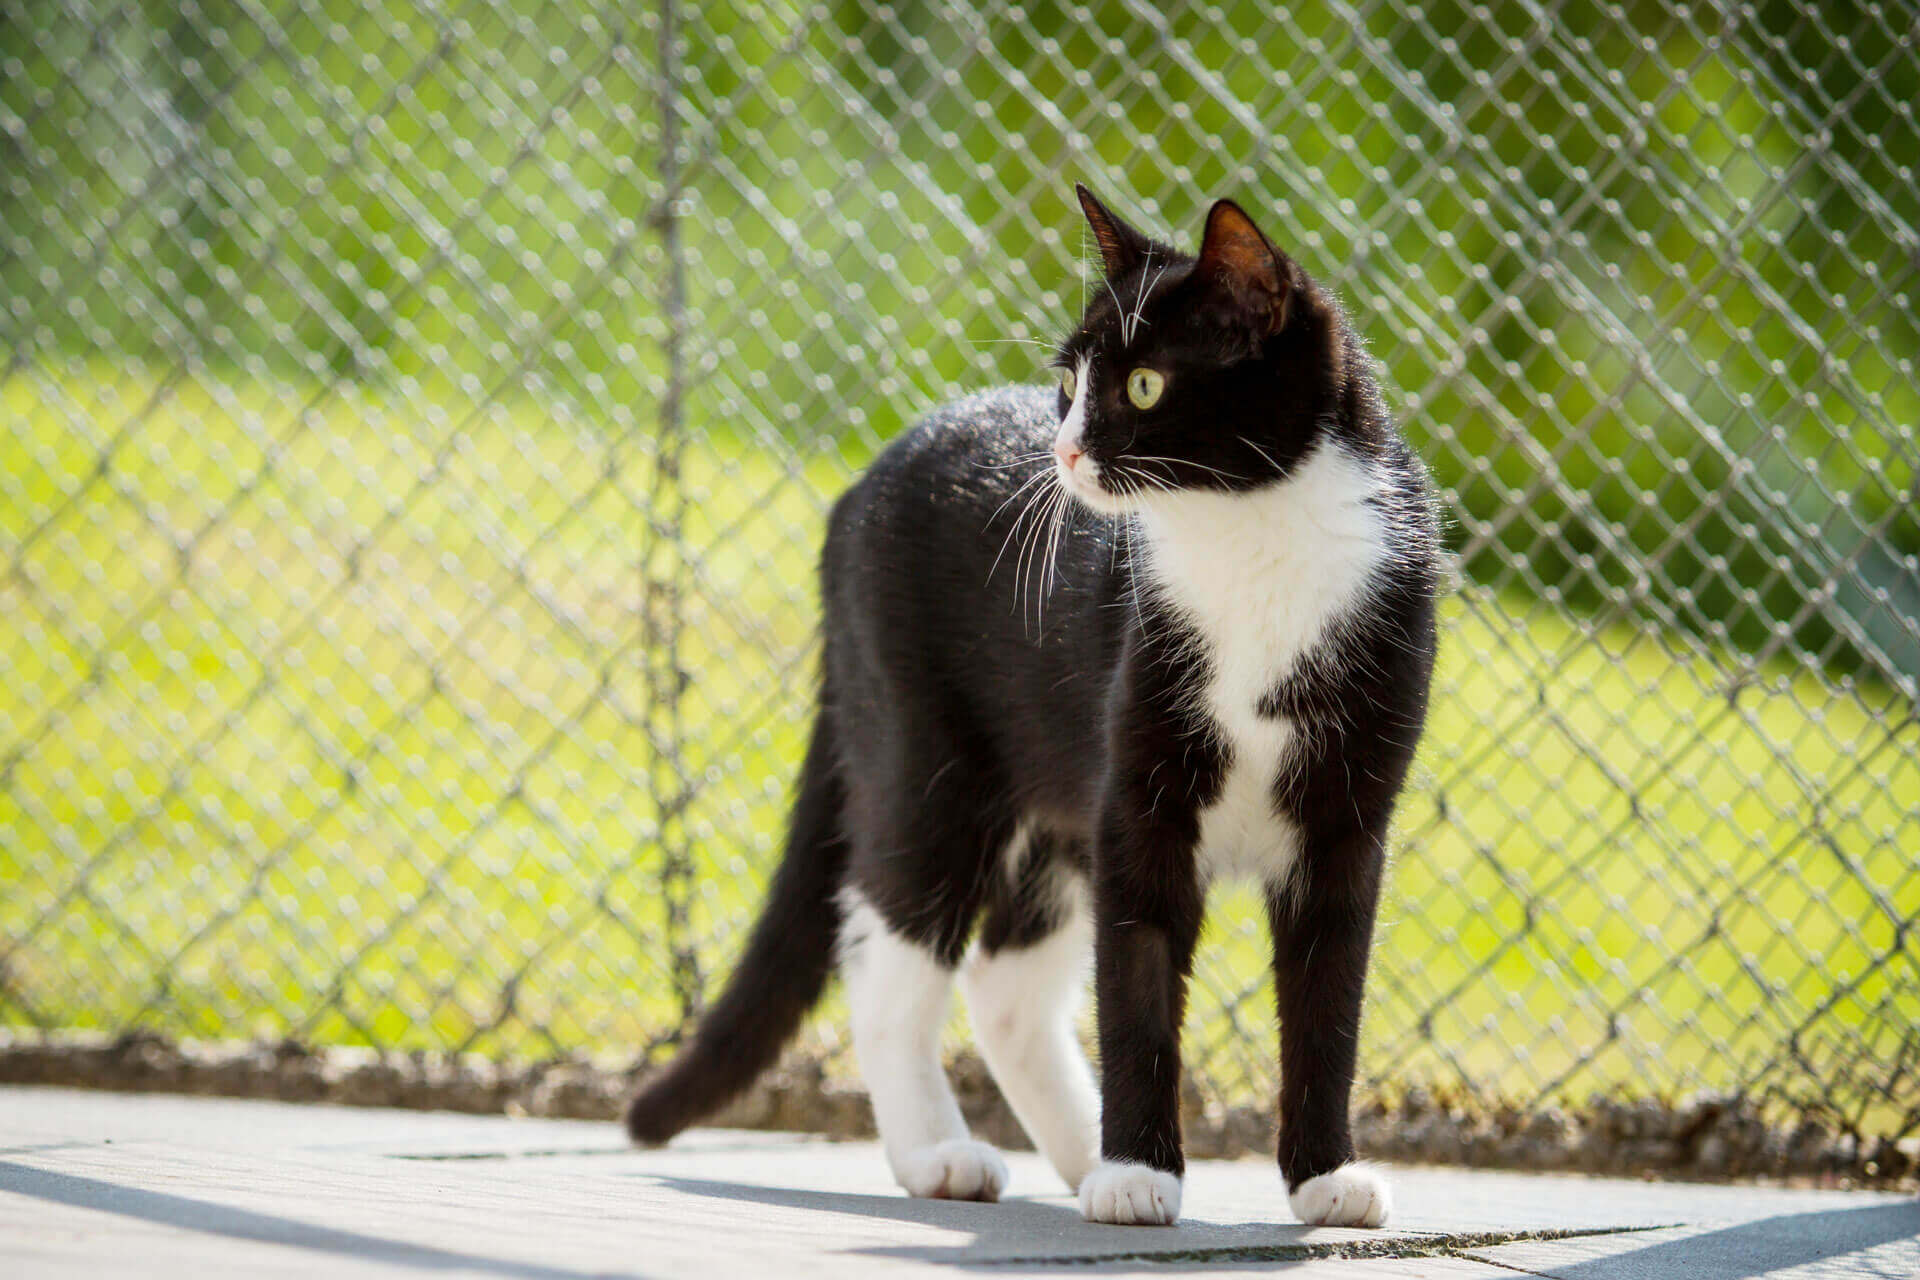 Le catio : Un enclos pour chat pour profiter de la nature sans danger